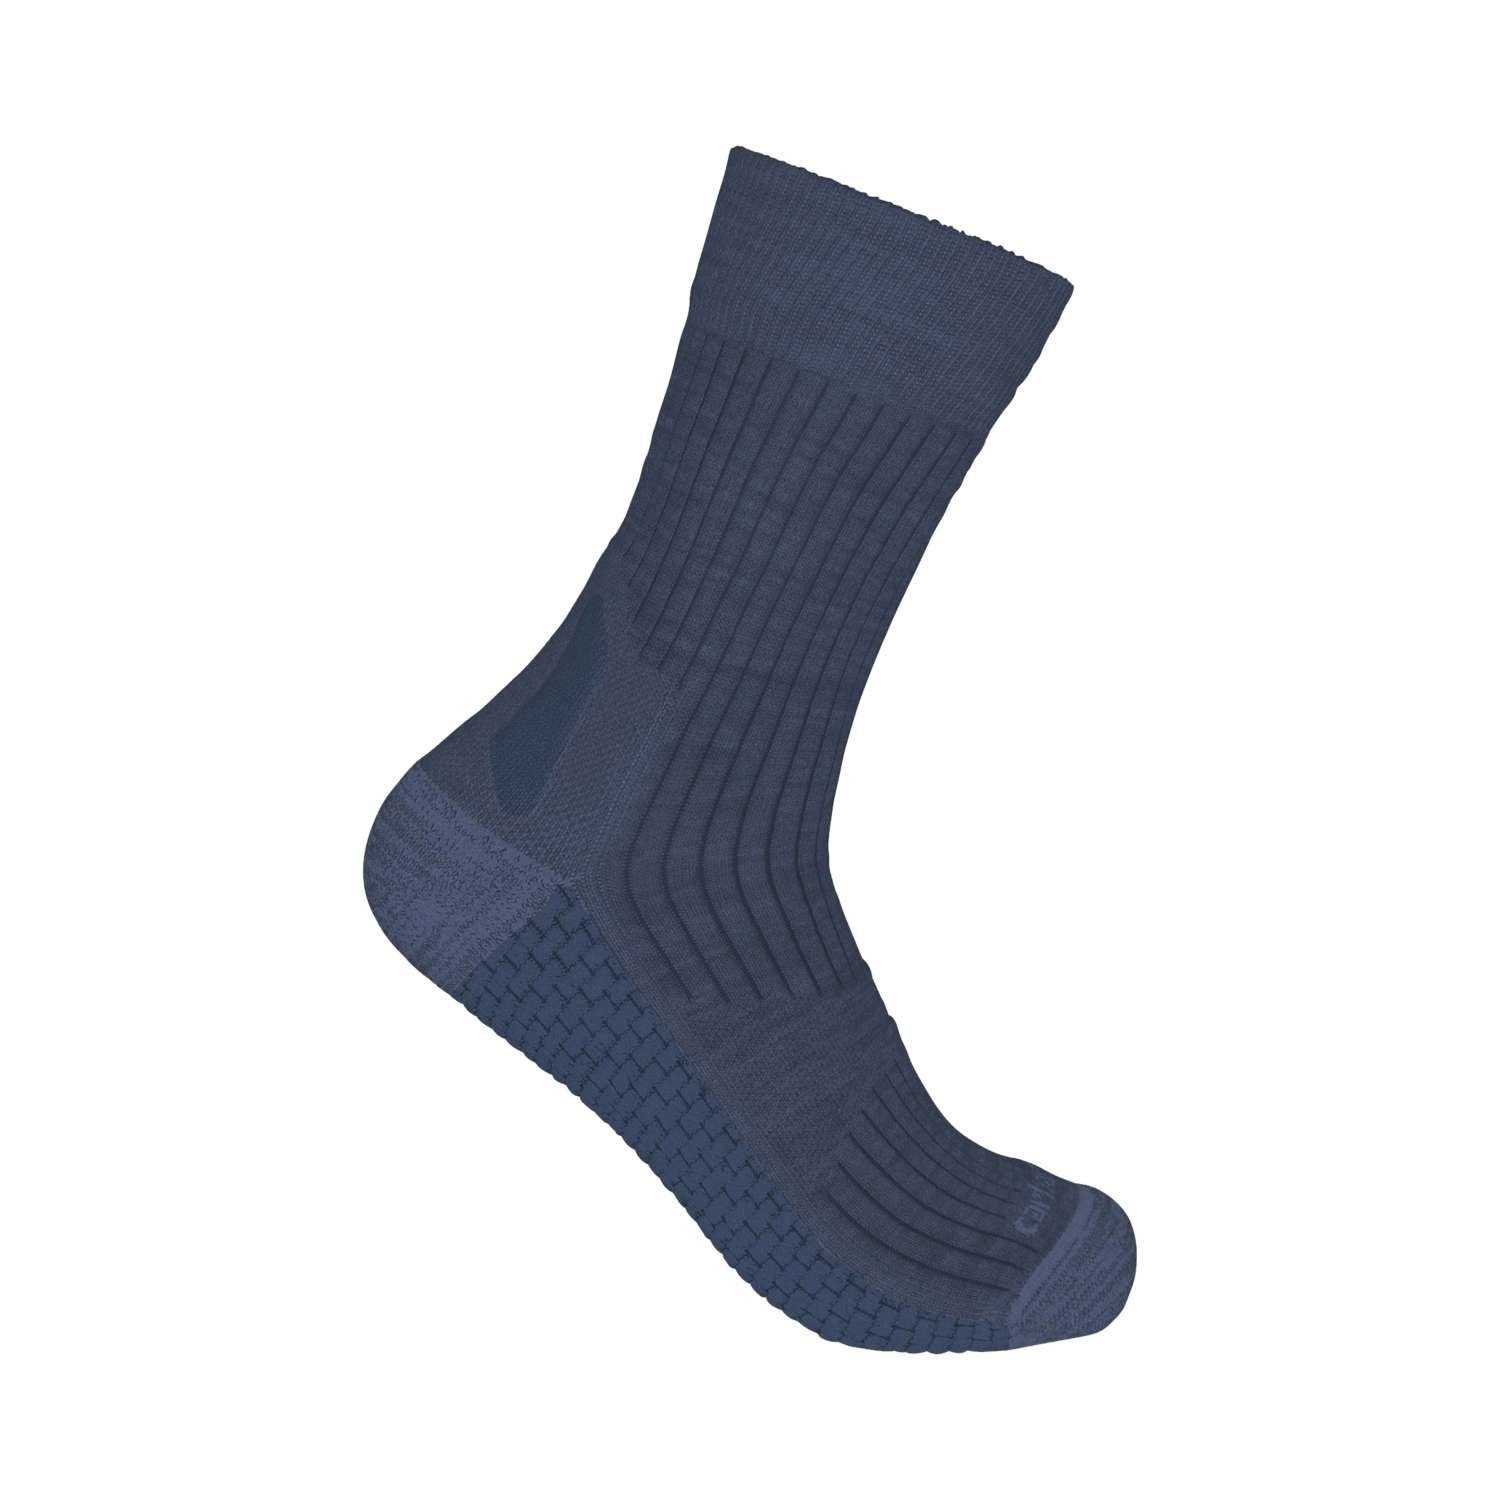 Carhartt Socken Socken Unisex Wool Crew Carhartt Short navy heather Synthetic-Merino